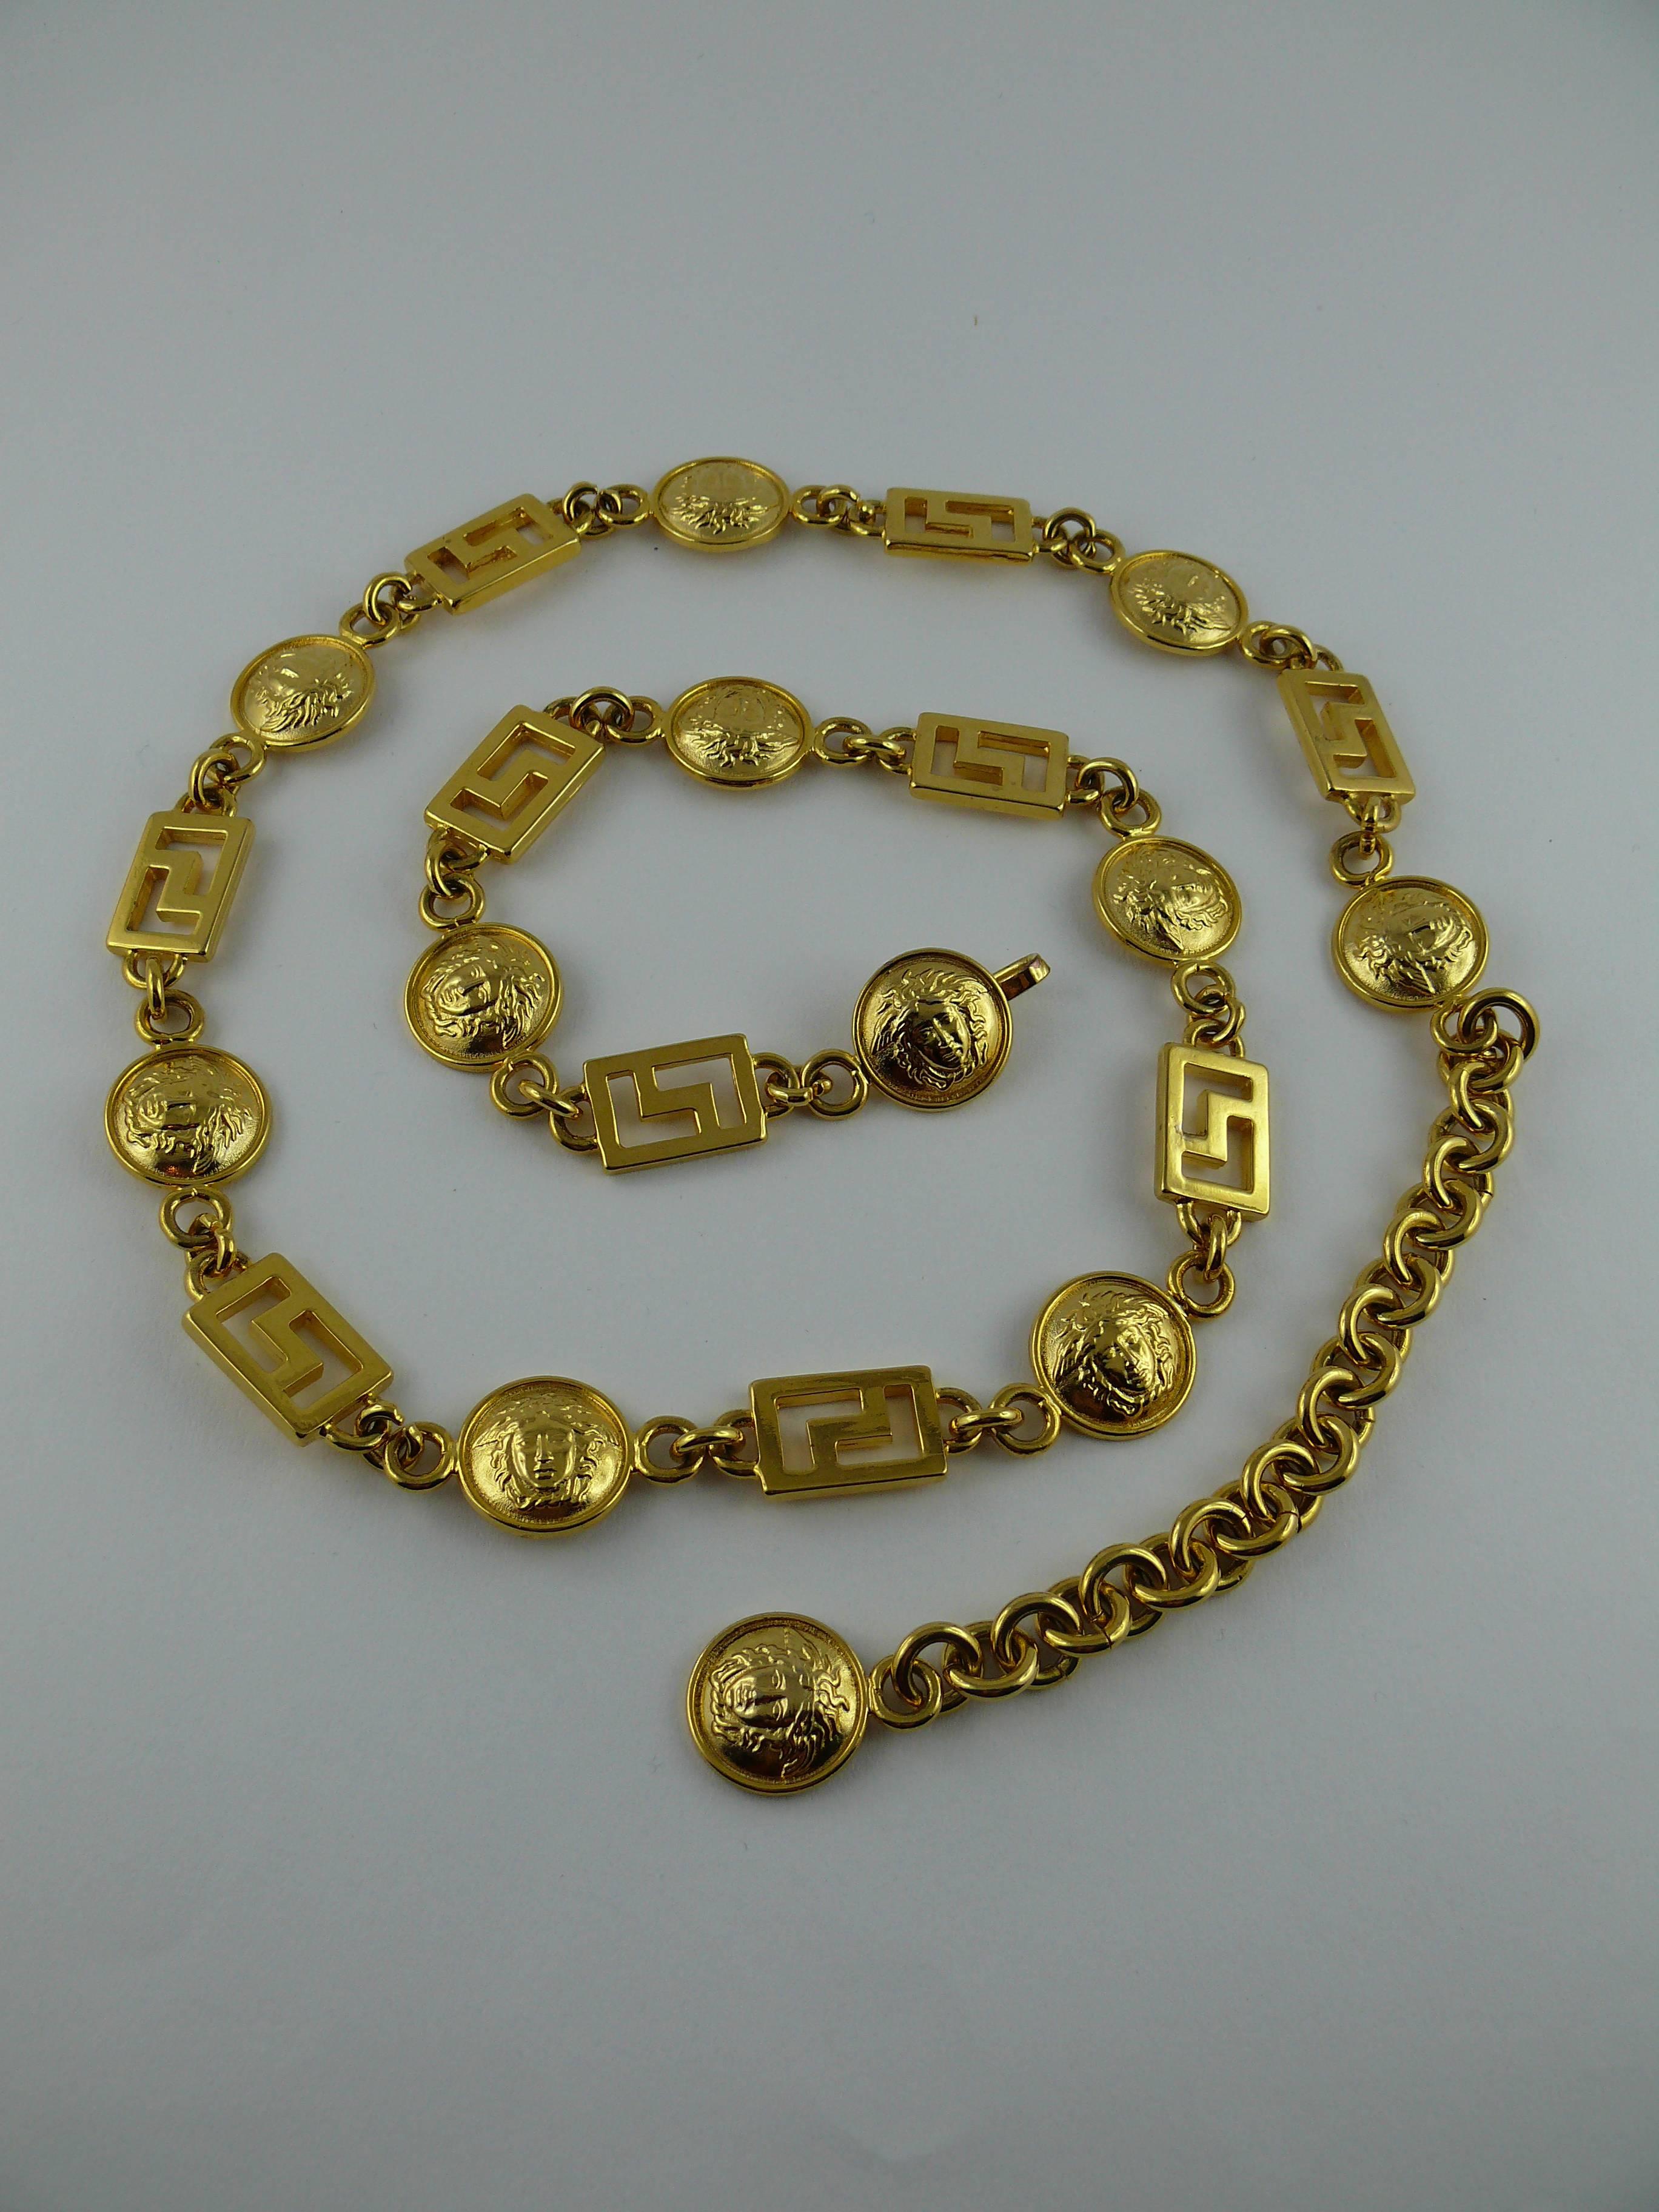 GIANNI VERSACE Vintage 1990s ikonischen vergoldet Medusa und Greca Kette Gürtel / Halskette.

Nicht signiert.

Kann als Gürtel oder als Halskette getragen werden.

Die Gesamtlänge beträgt 84 cm (33,07 Zoll).
Die Länge ist